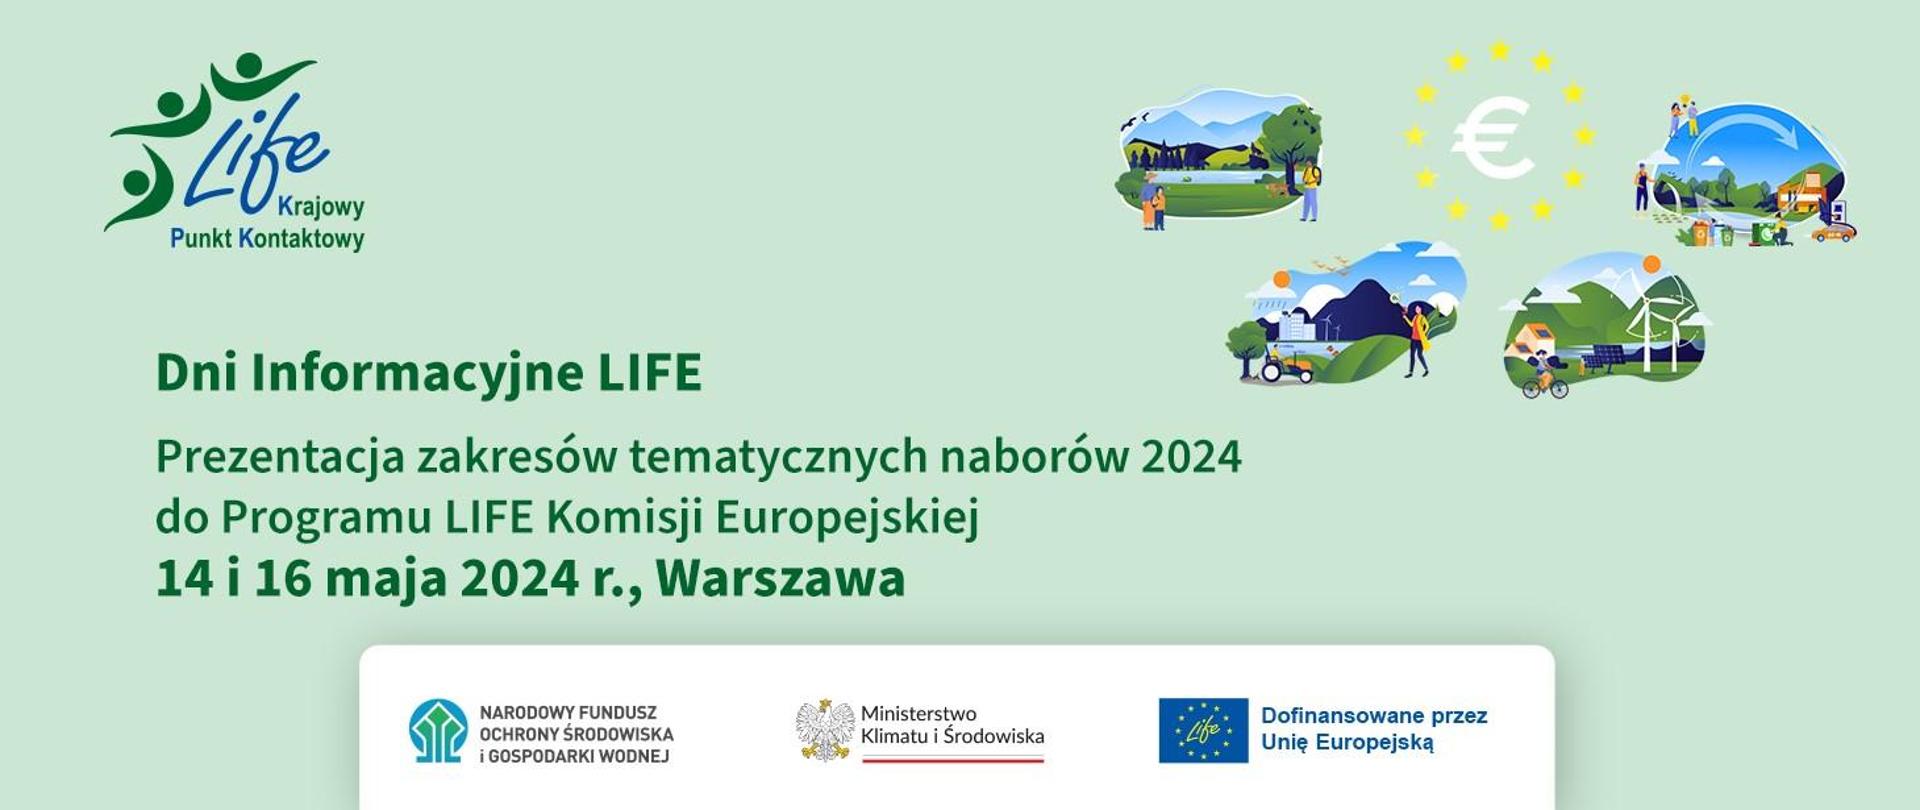 Plansza informacyjna o Dniach Informacyjnych LIFE i prezentacji zakresów tematycznych naborów 2024 do Programu LIFE Komisji Europejskiej 14 i 16 maja 2024 roku w Warszawie